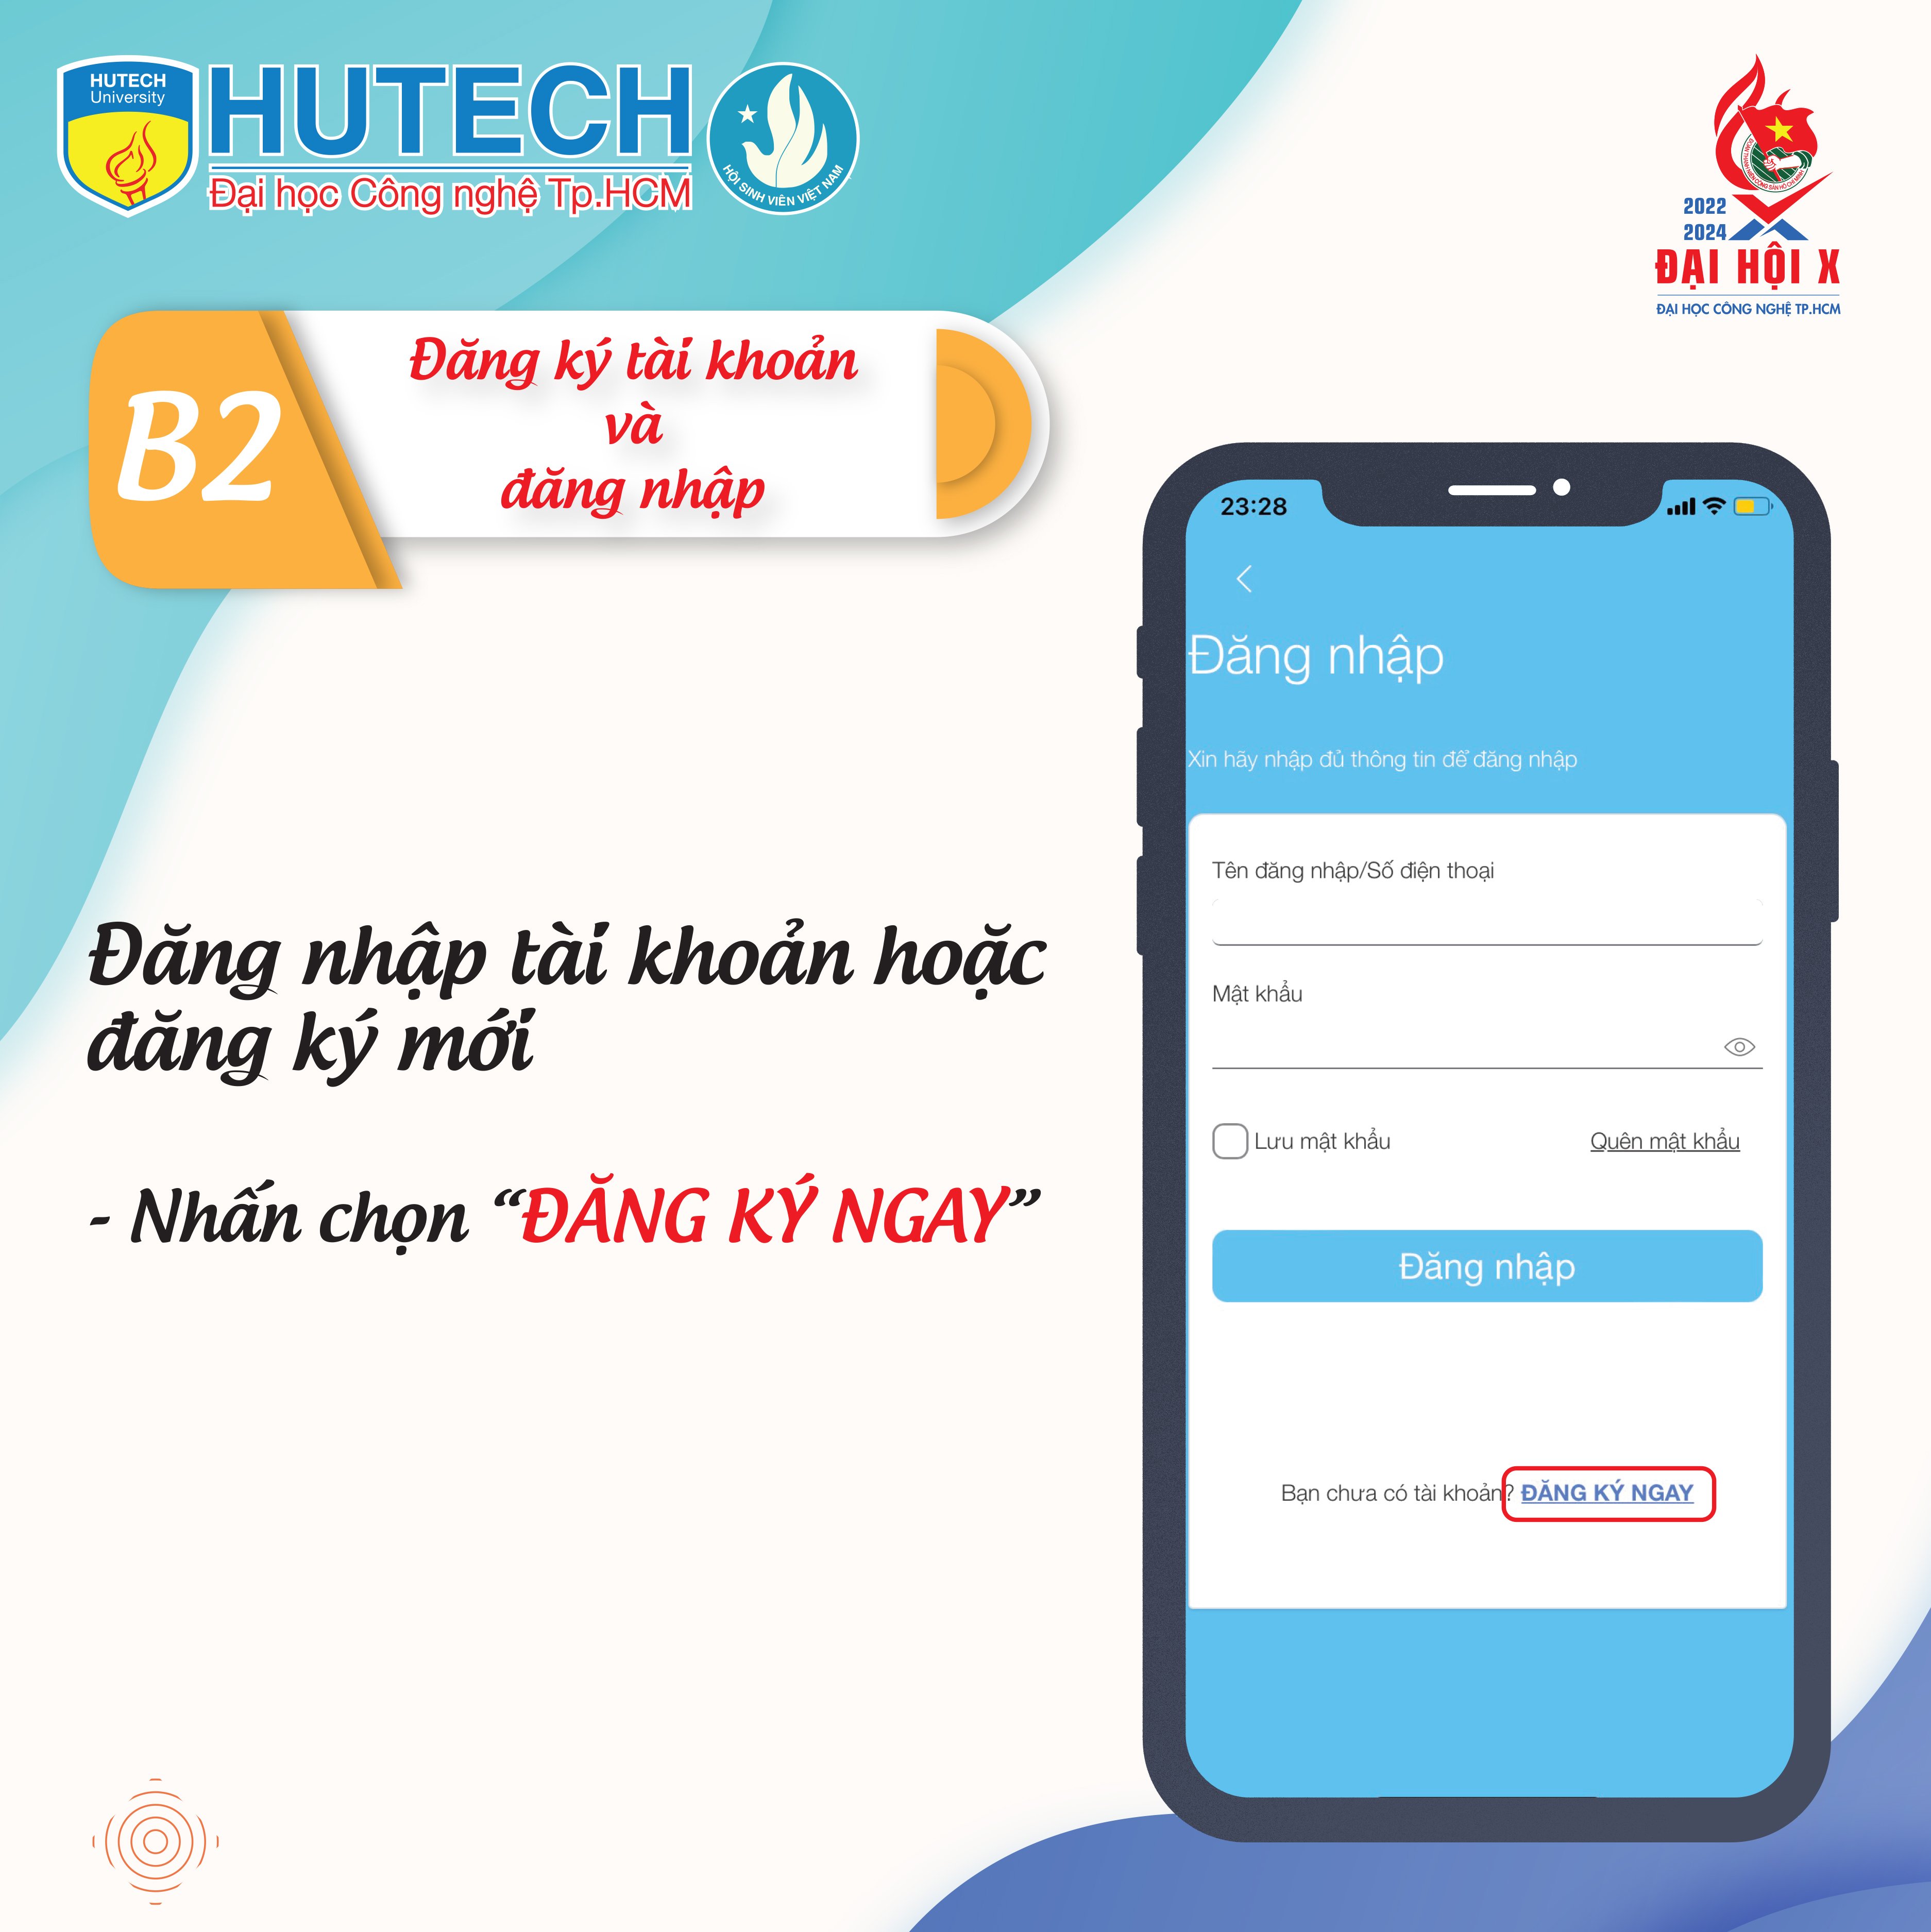 Thông báo thay thế sổ Đoàn viên bằng app Thanh niên Việt Nam 64